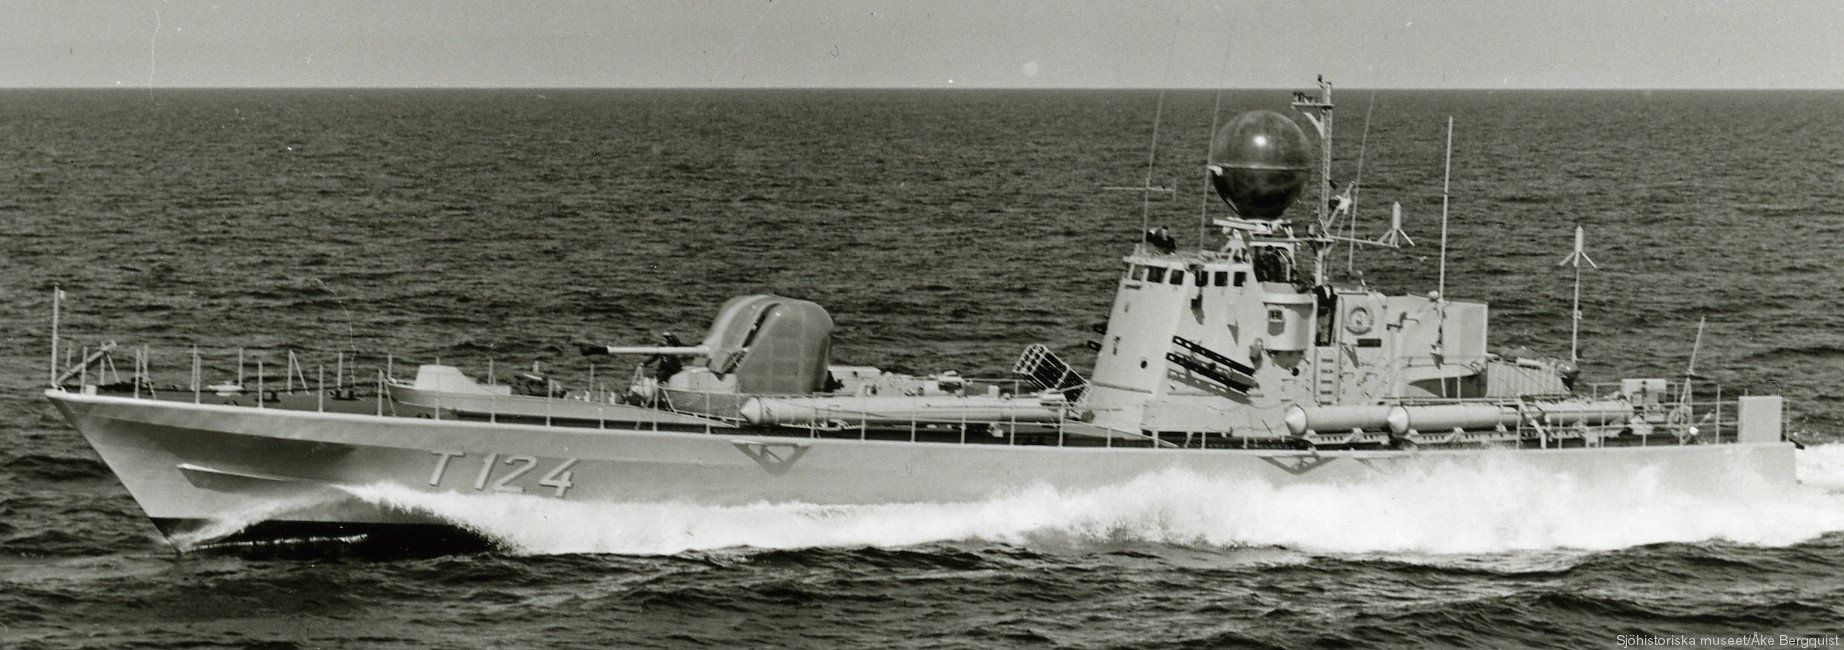 t124 castor hswms hms spica class fast attack craft torpedo boat vessel swedish navy svenska marinen 05